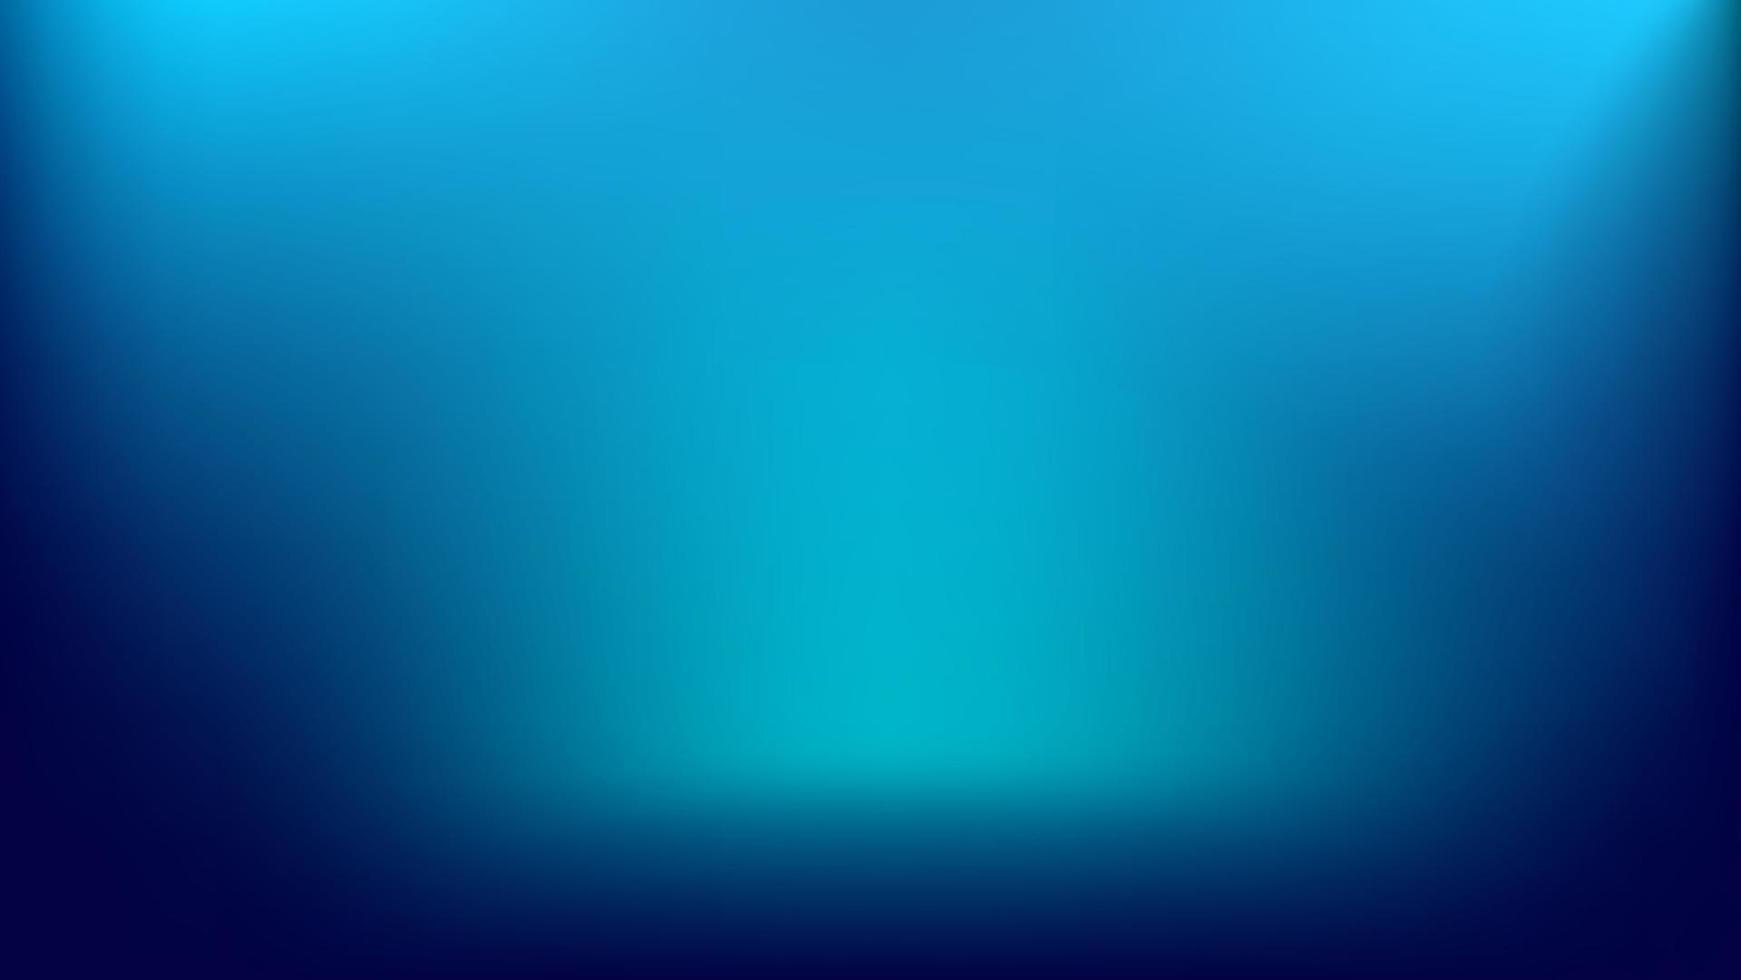 blur background blue vector